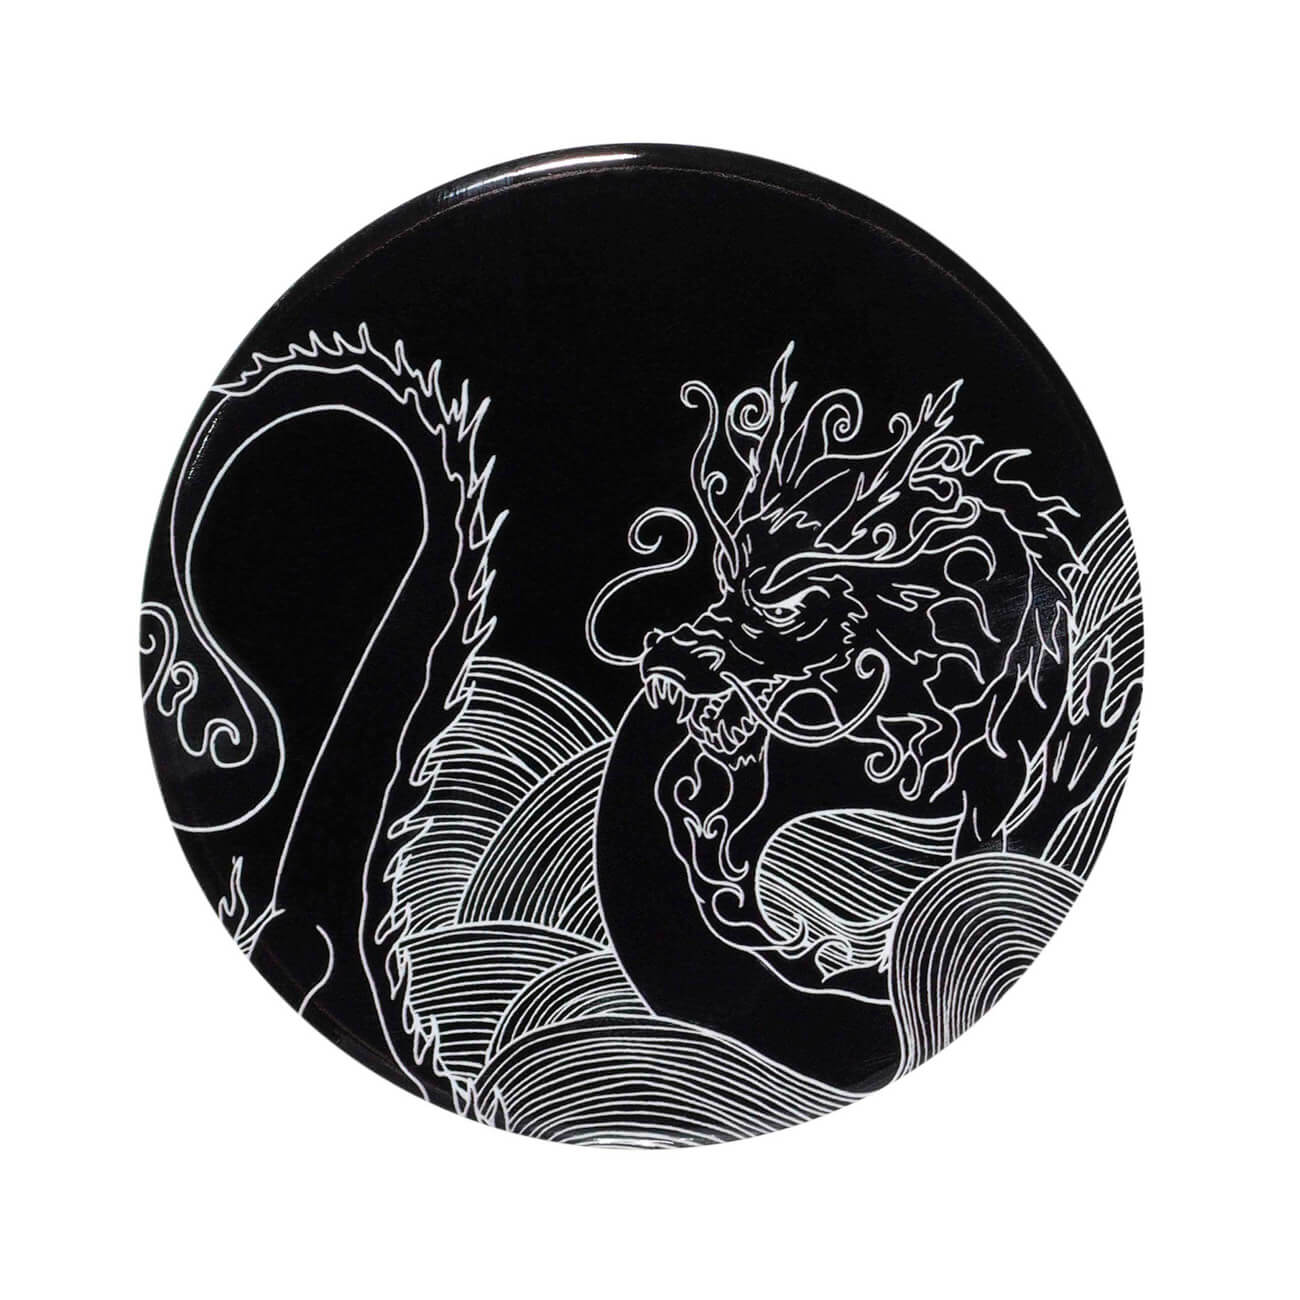 Подставка под кружку, 11 см, керамика/пробка, круглая, черная, Дракон, Dragon dayron изображение № 1